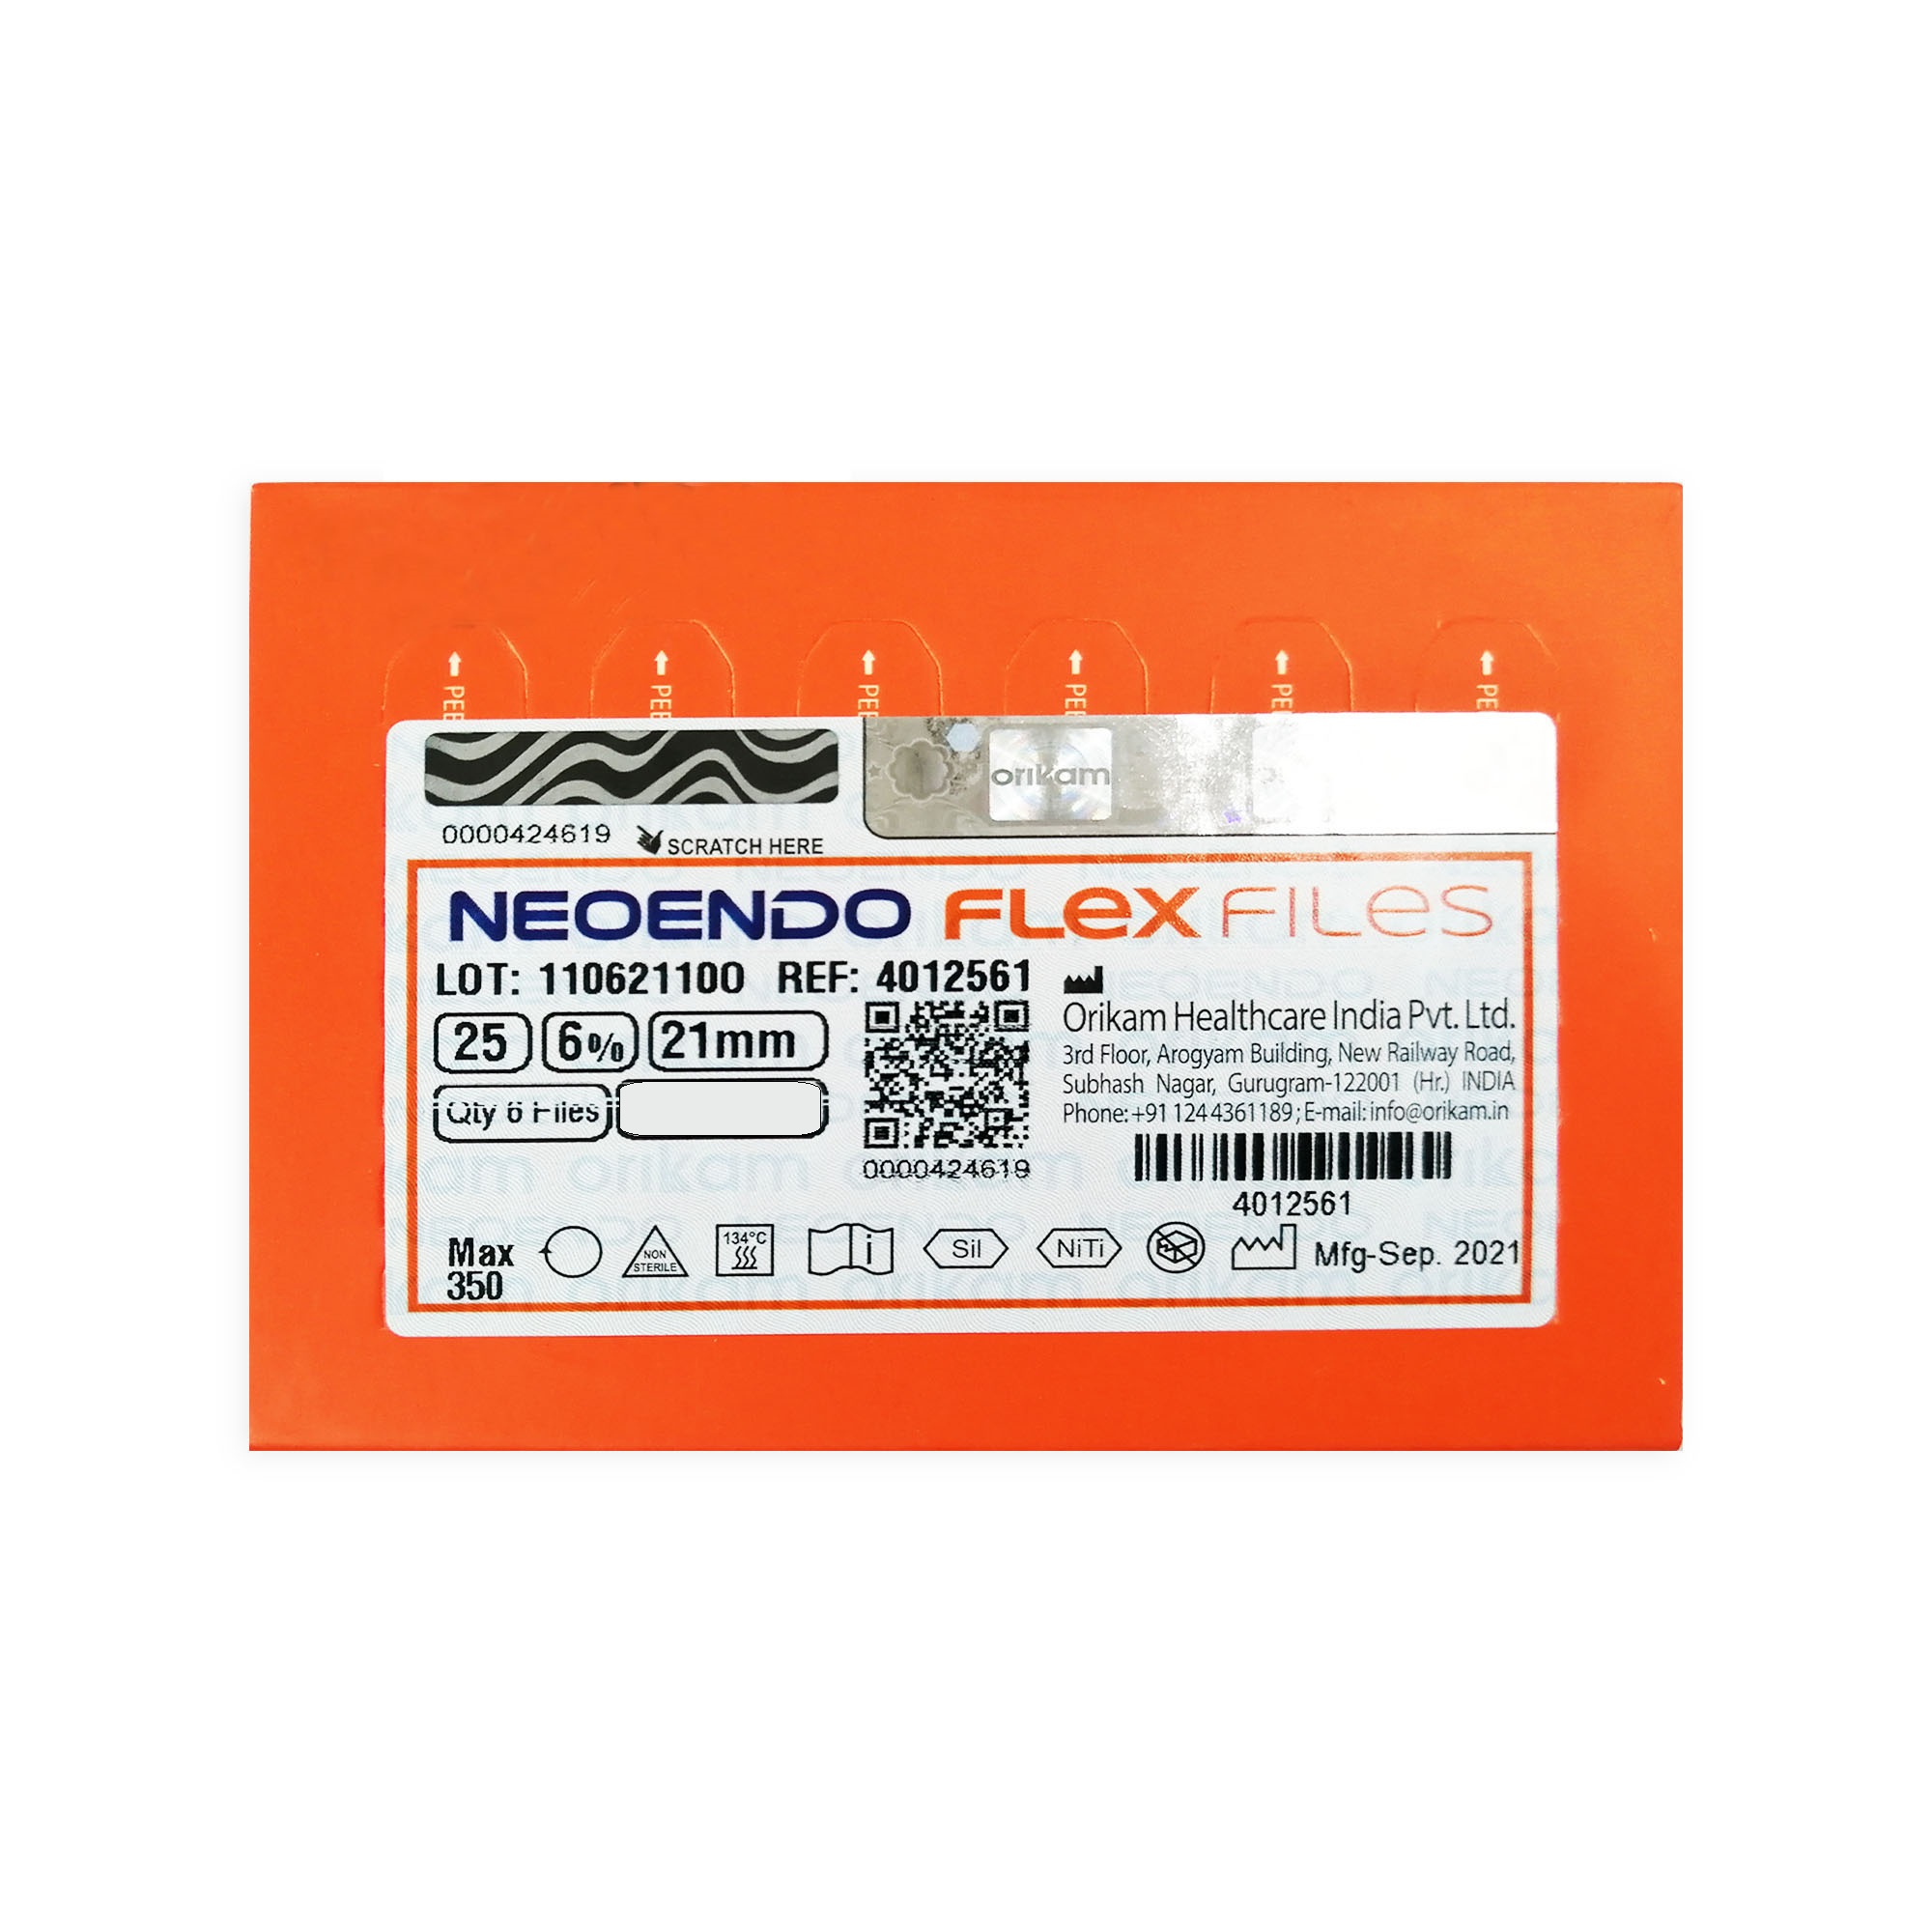 NeoEndo Flex Files 31mm Assorted Endo Rotary Files